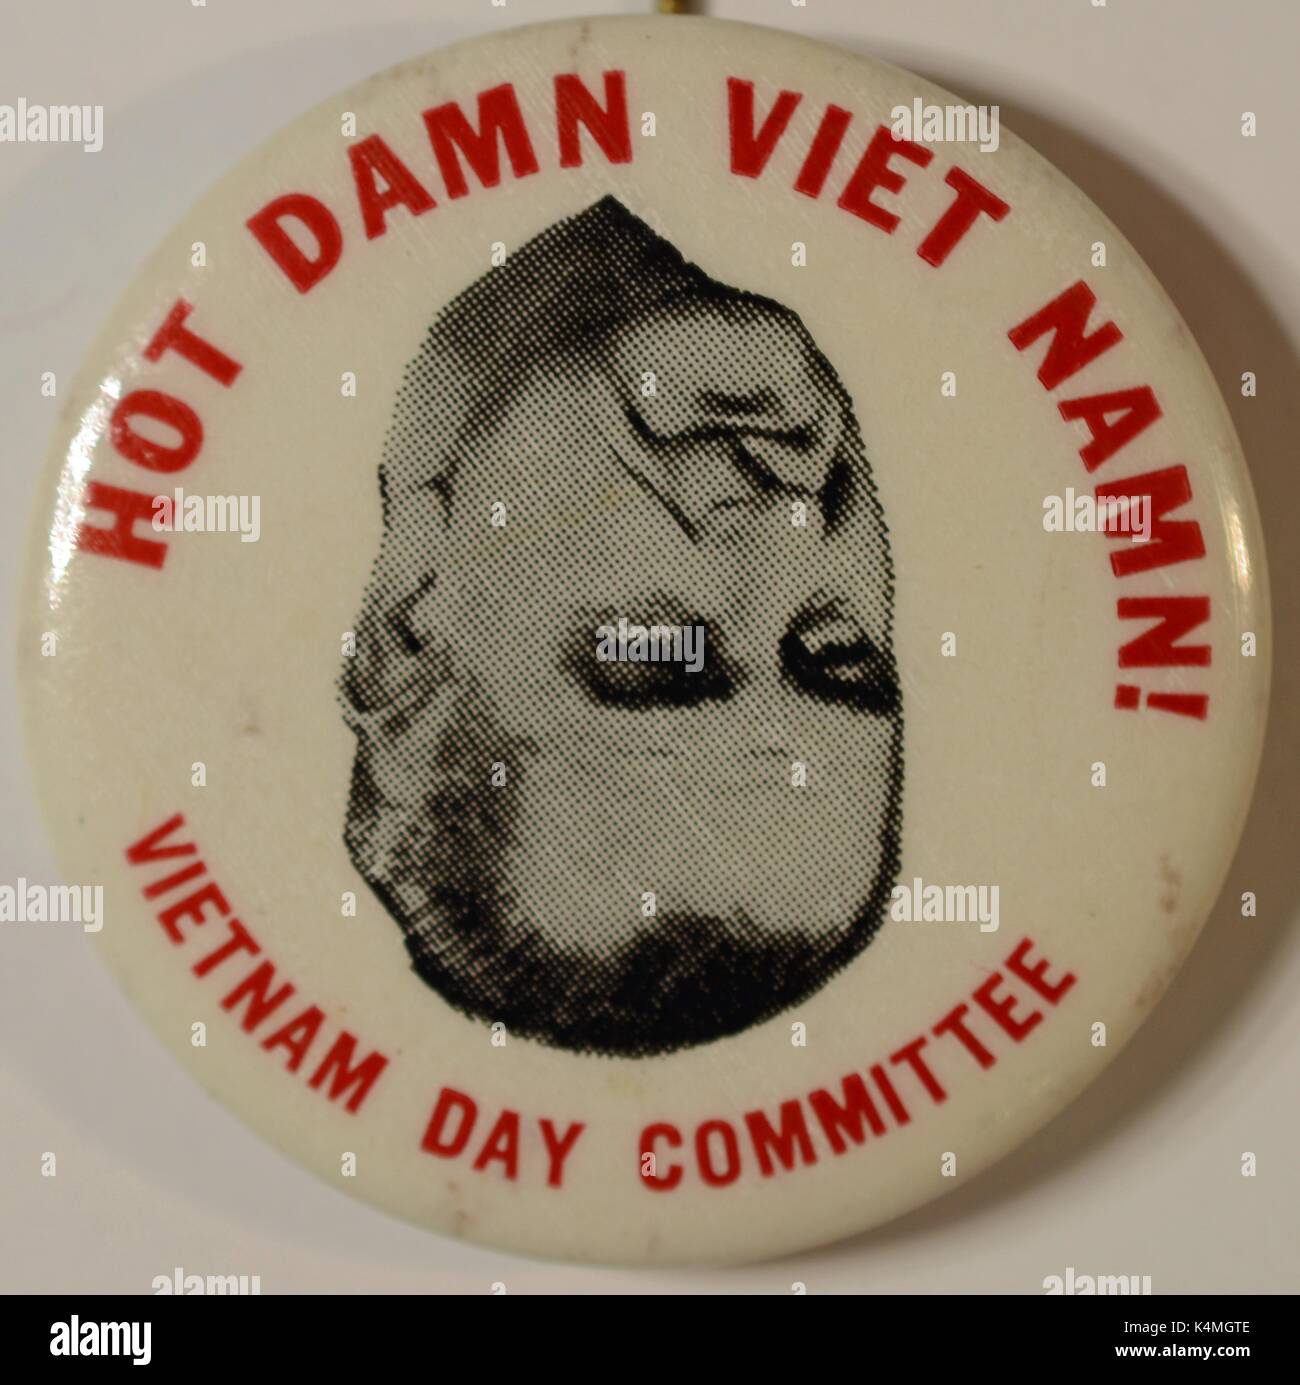 Pinback sur le bouton dans le vietnam day committee avec l'image du président américain Lyndon Johnson, avec lecture de texte 'hot damn viet nom', critiquer le président de la guerre du Vietnam, 1965. Banque D'Images